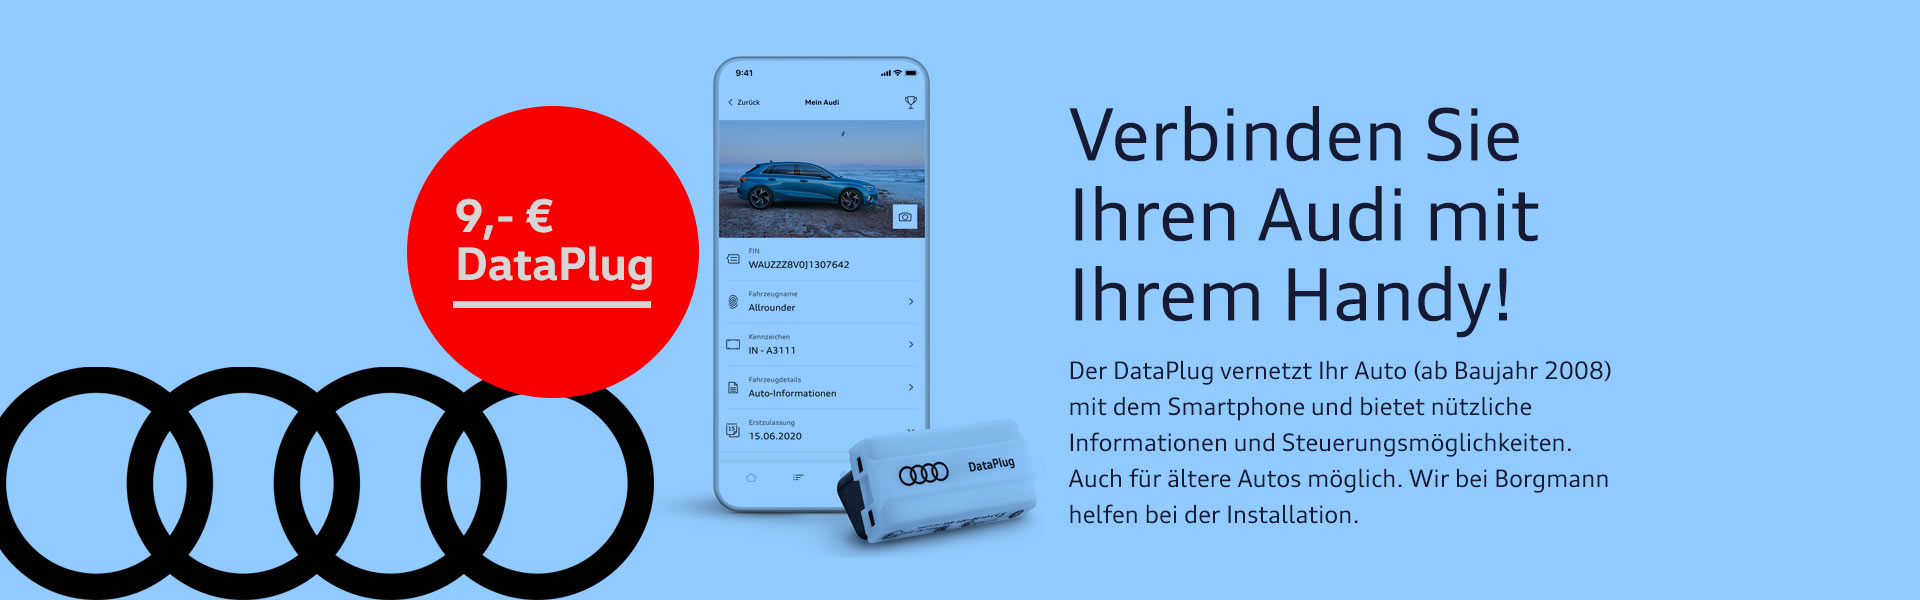 Audi DataPlug kaufen